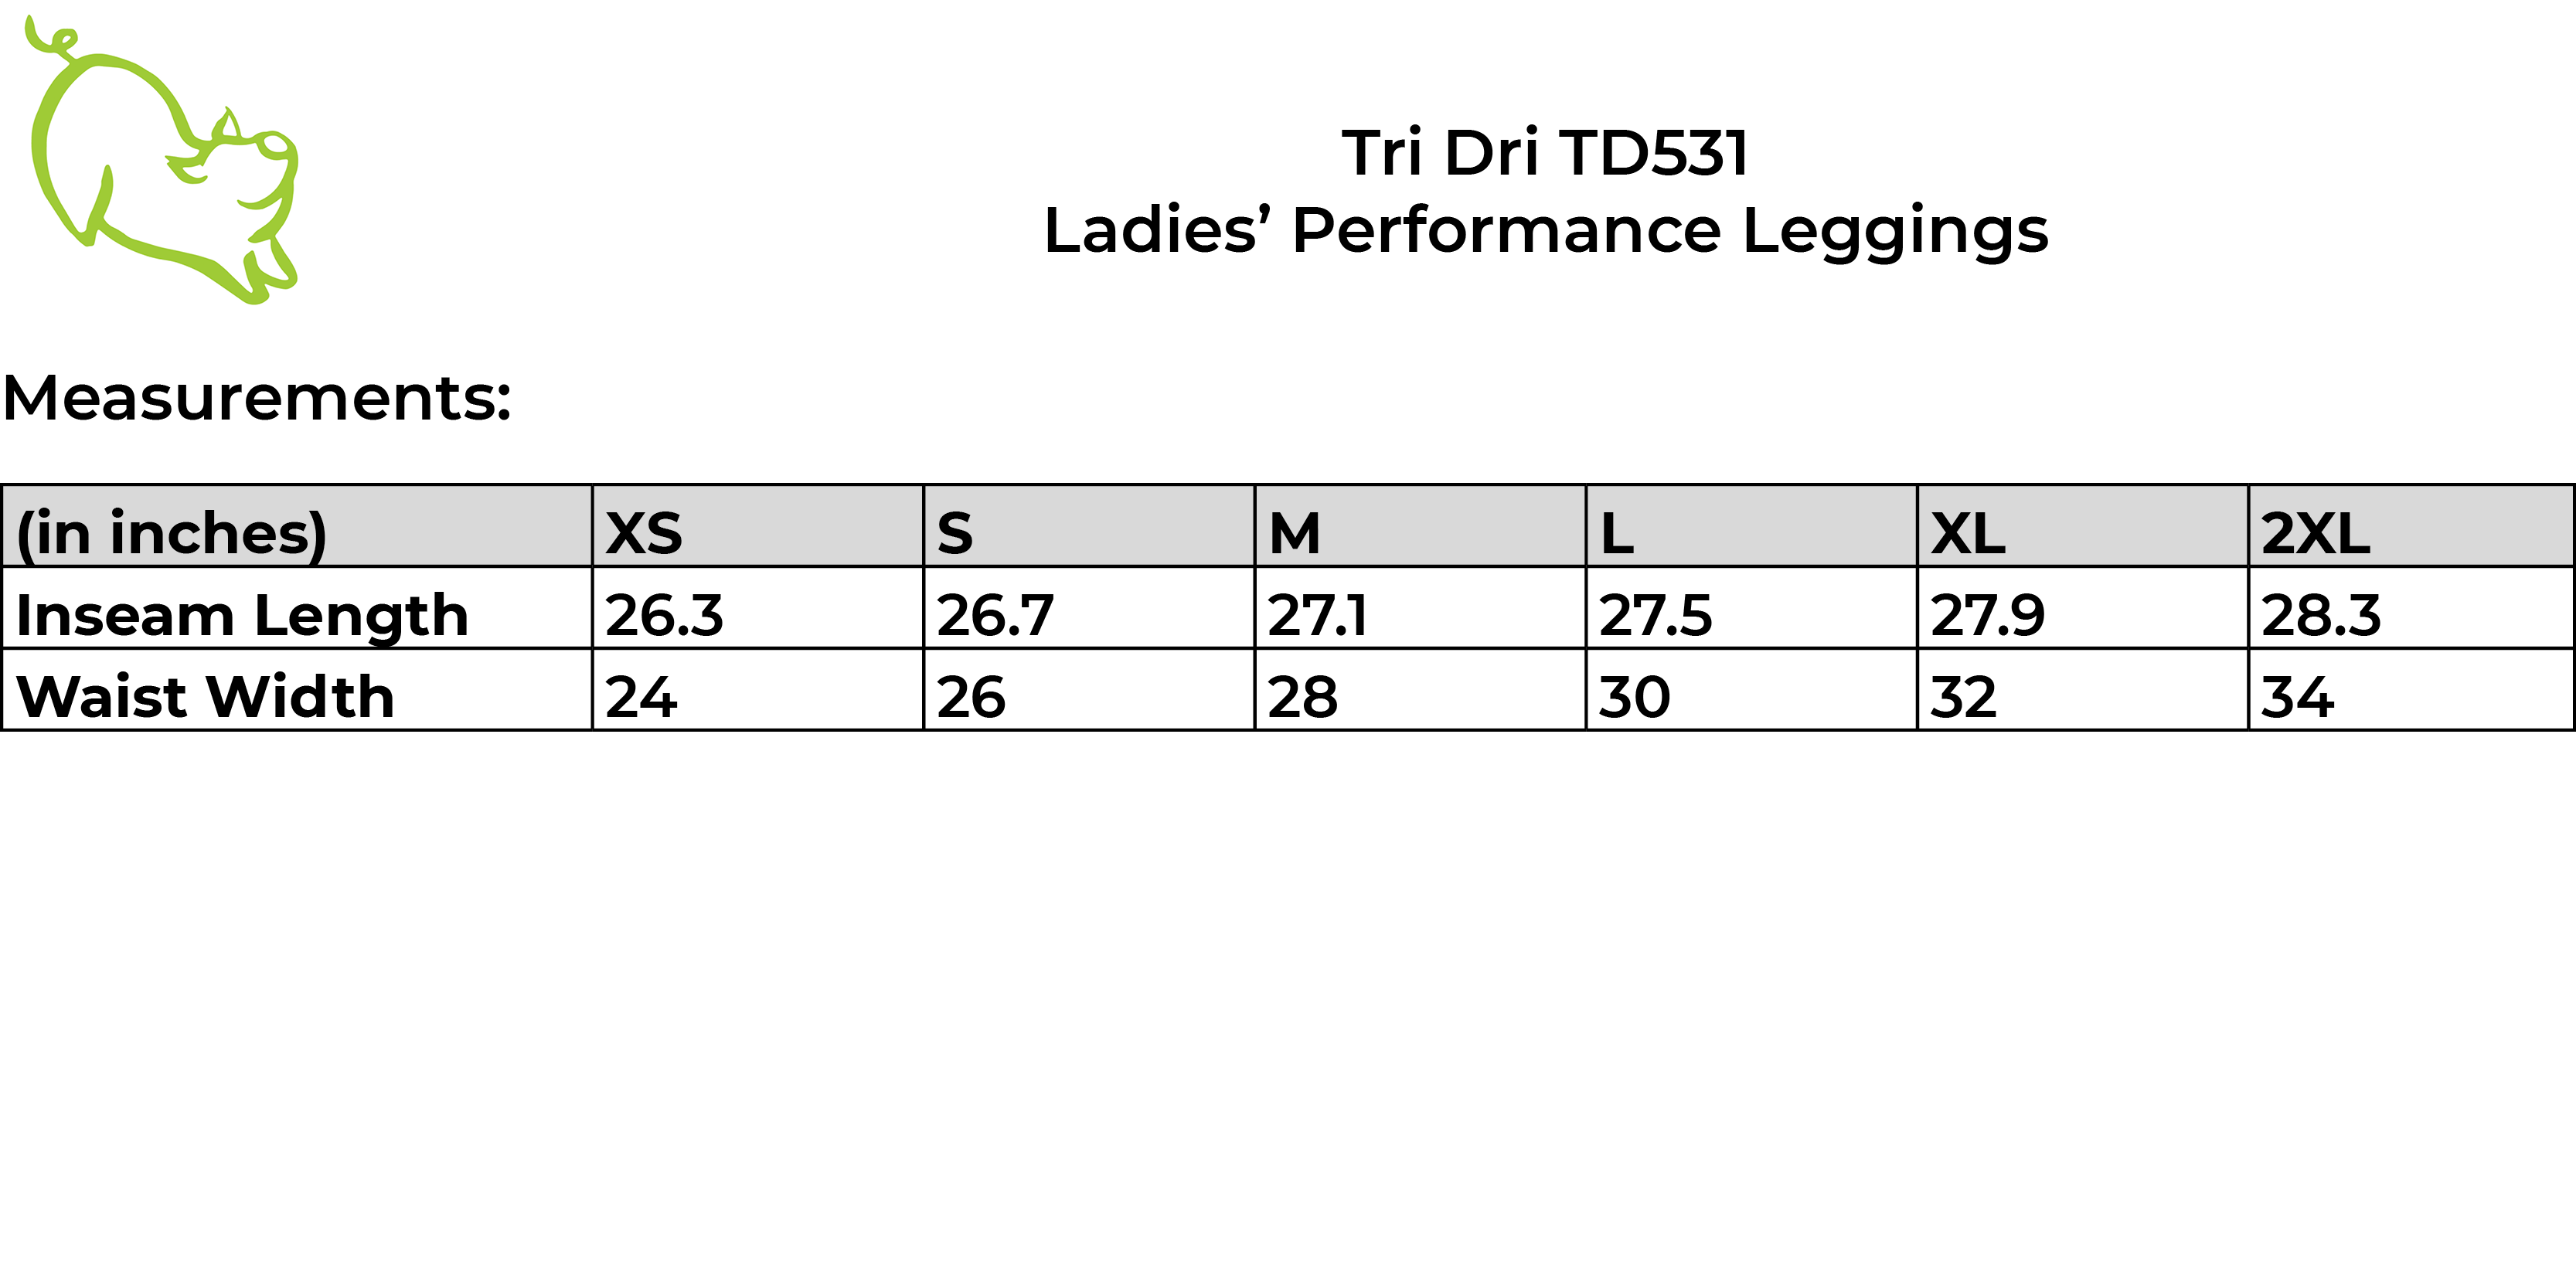 Tri Dri TD531